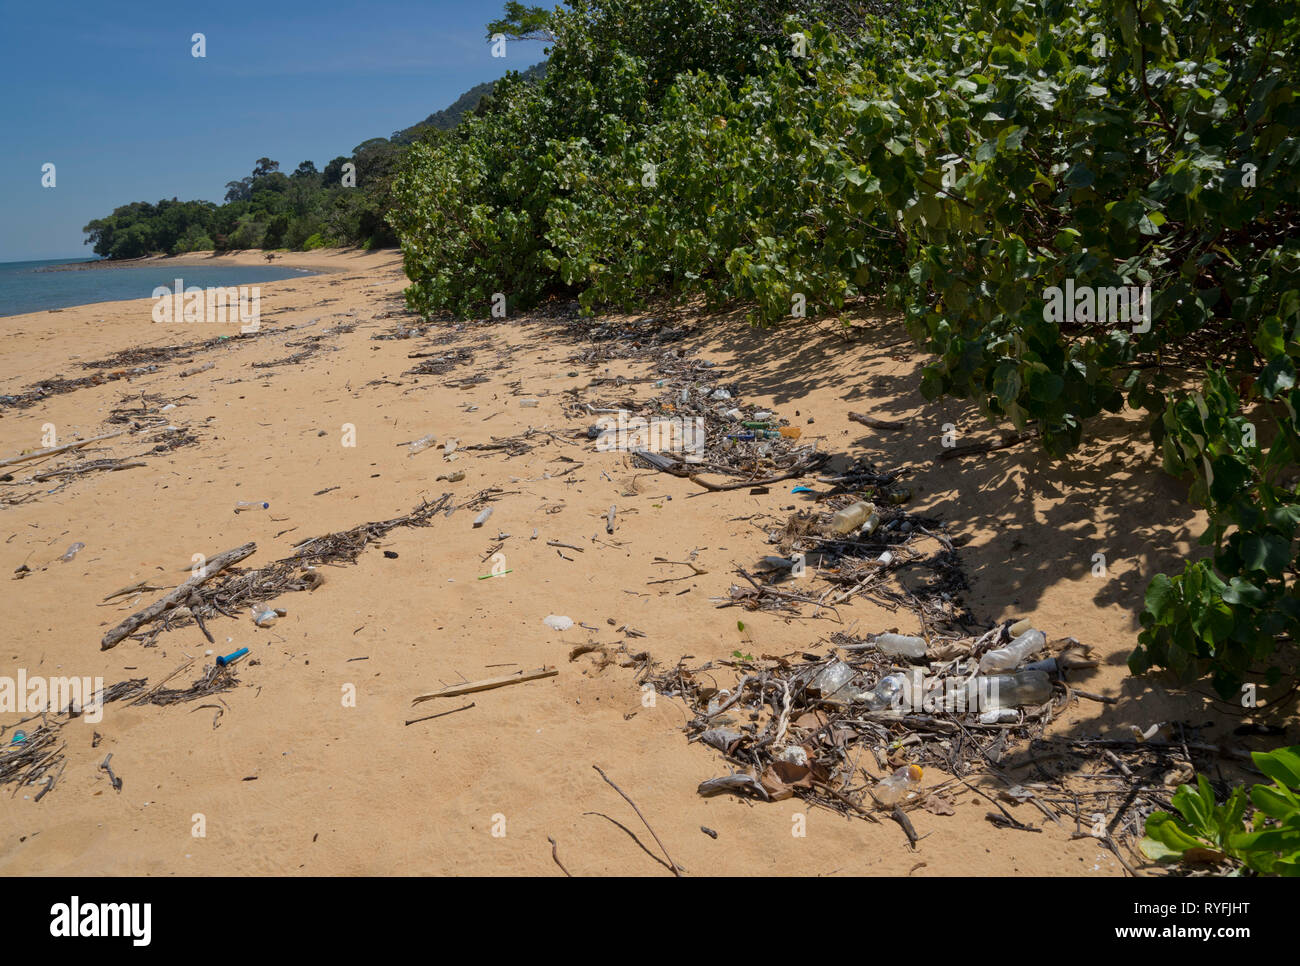 Sacs en plastique,pailles et bouteilles entraînant une pollution dans les plages de l'île de Langkawi, Malaisie,Asia Banque D'Images